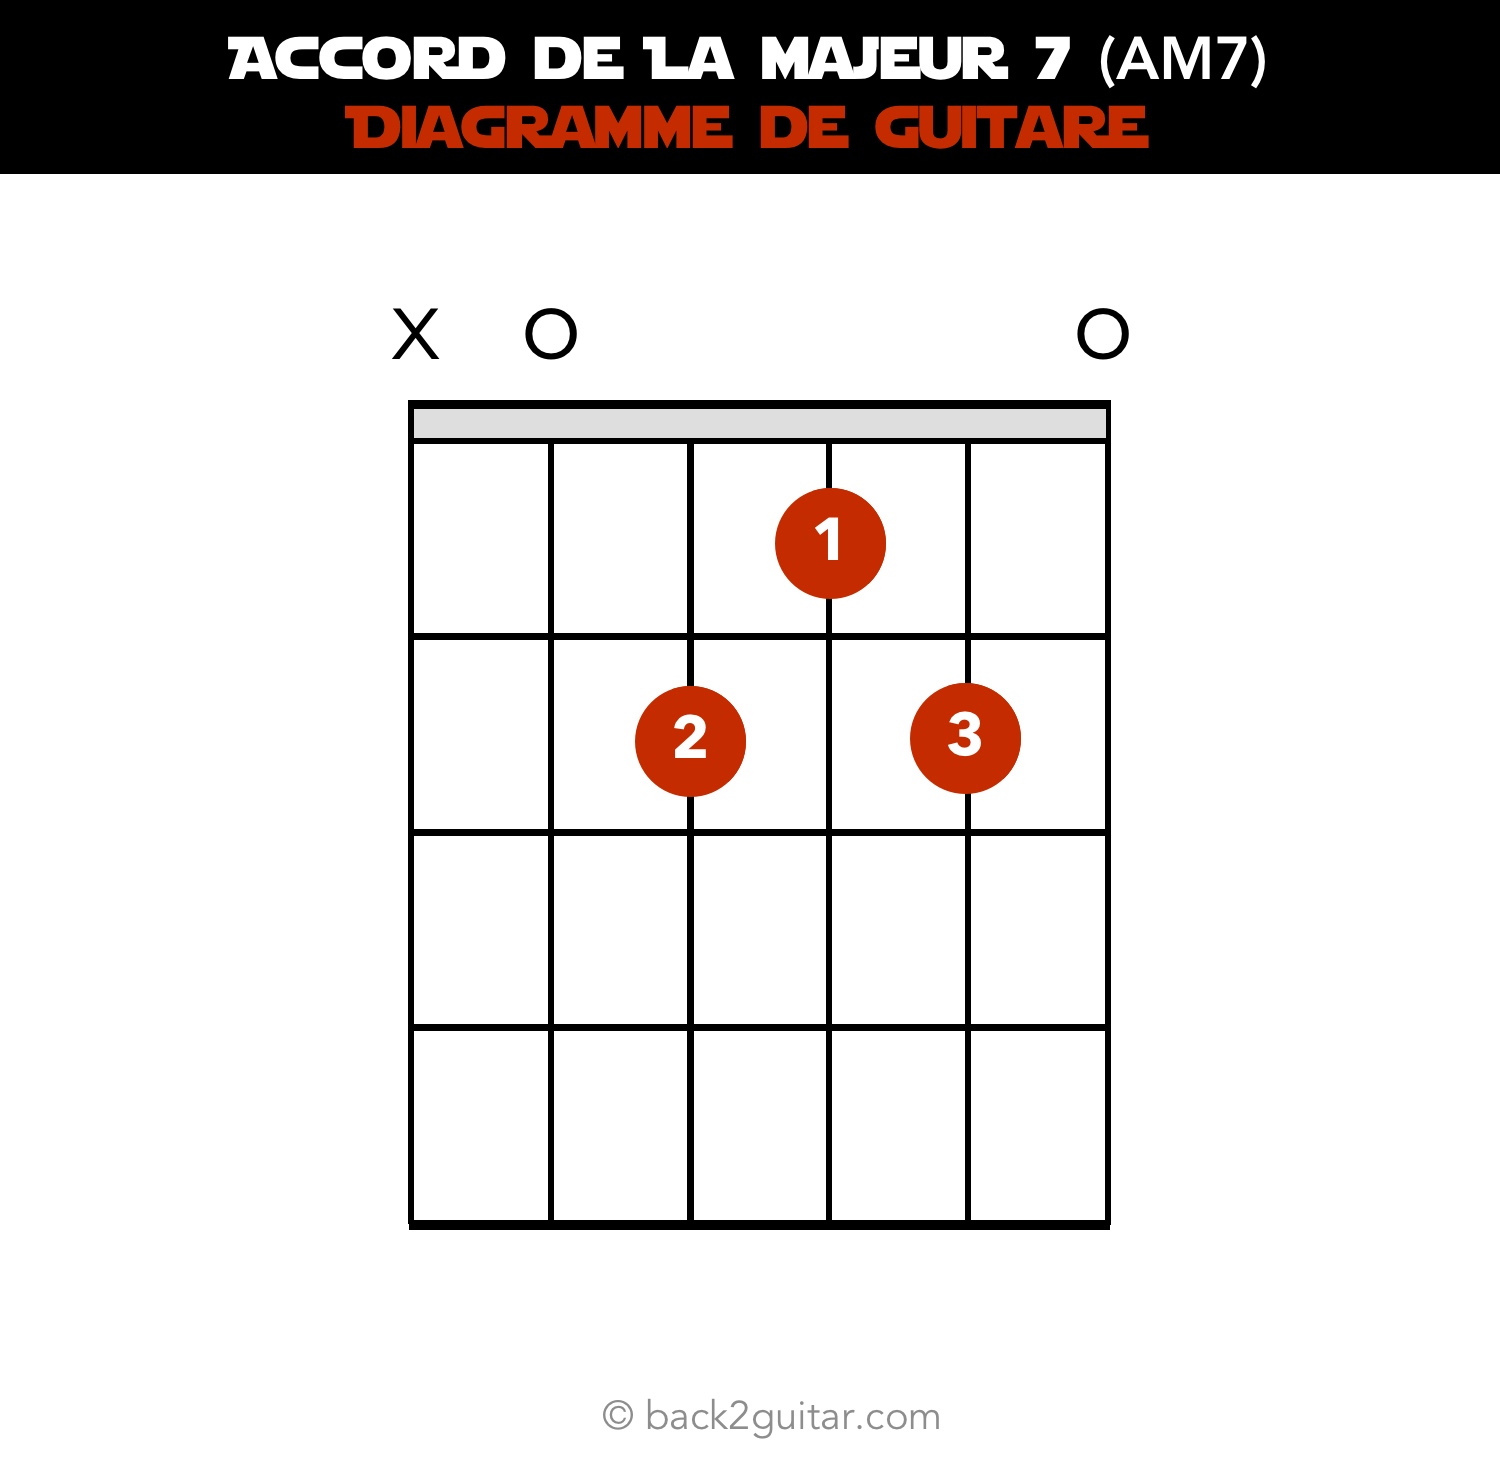 accord guitare la majeur 7 diagramme guitare (AM7)